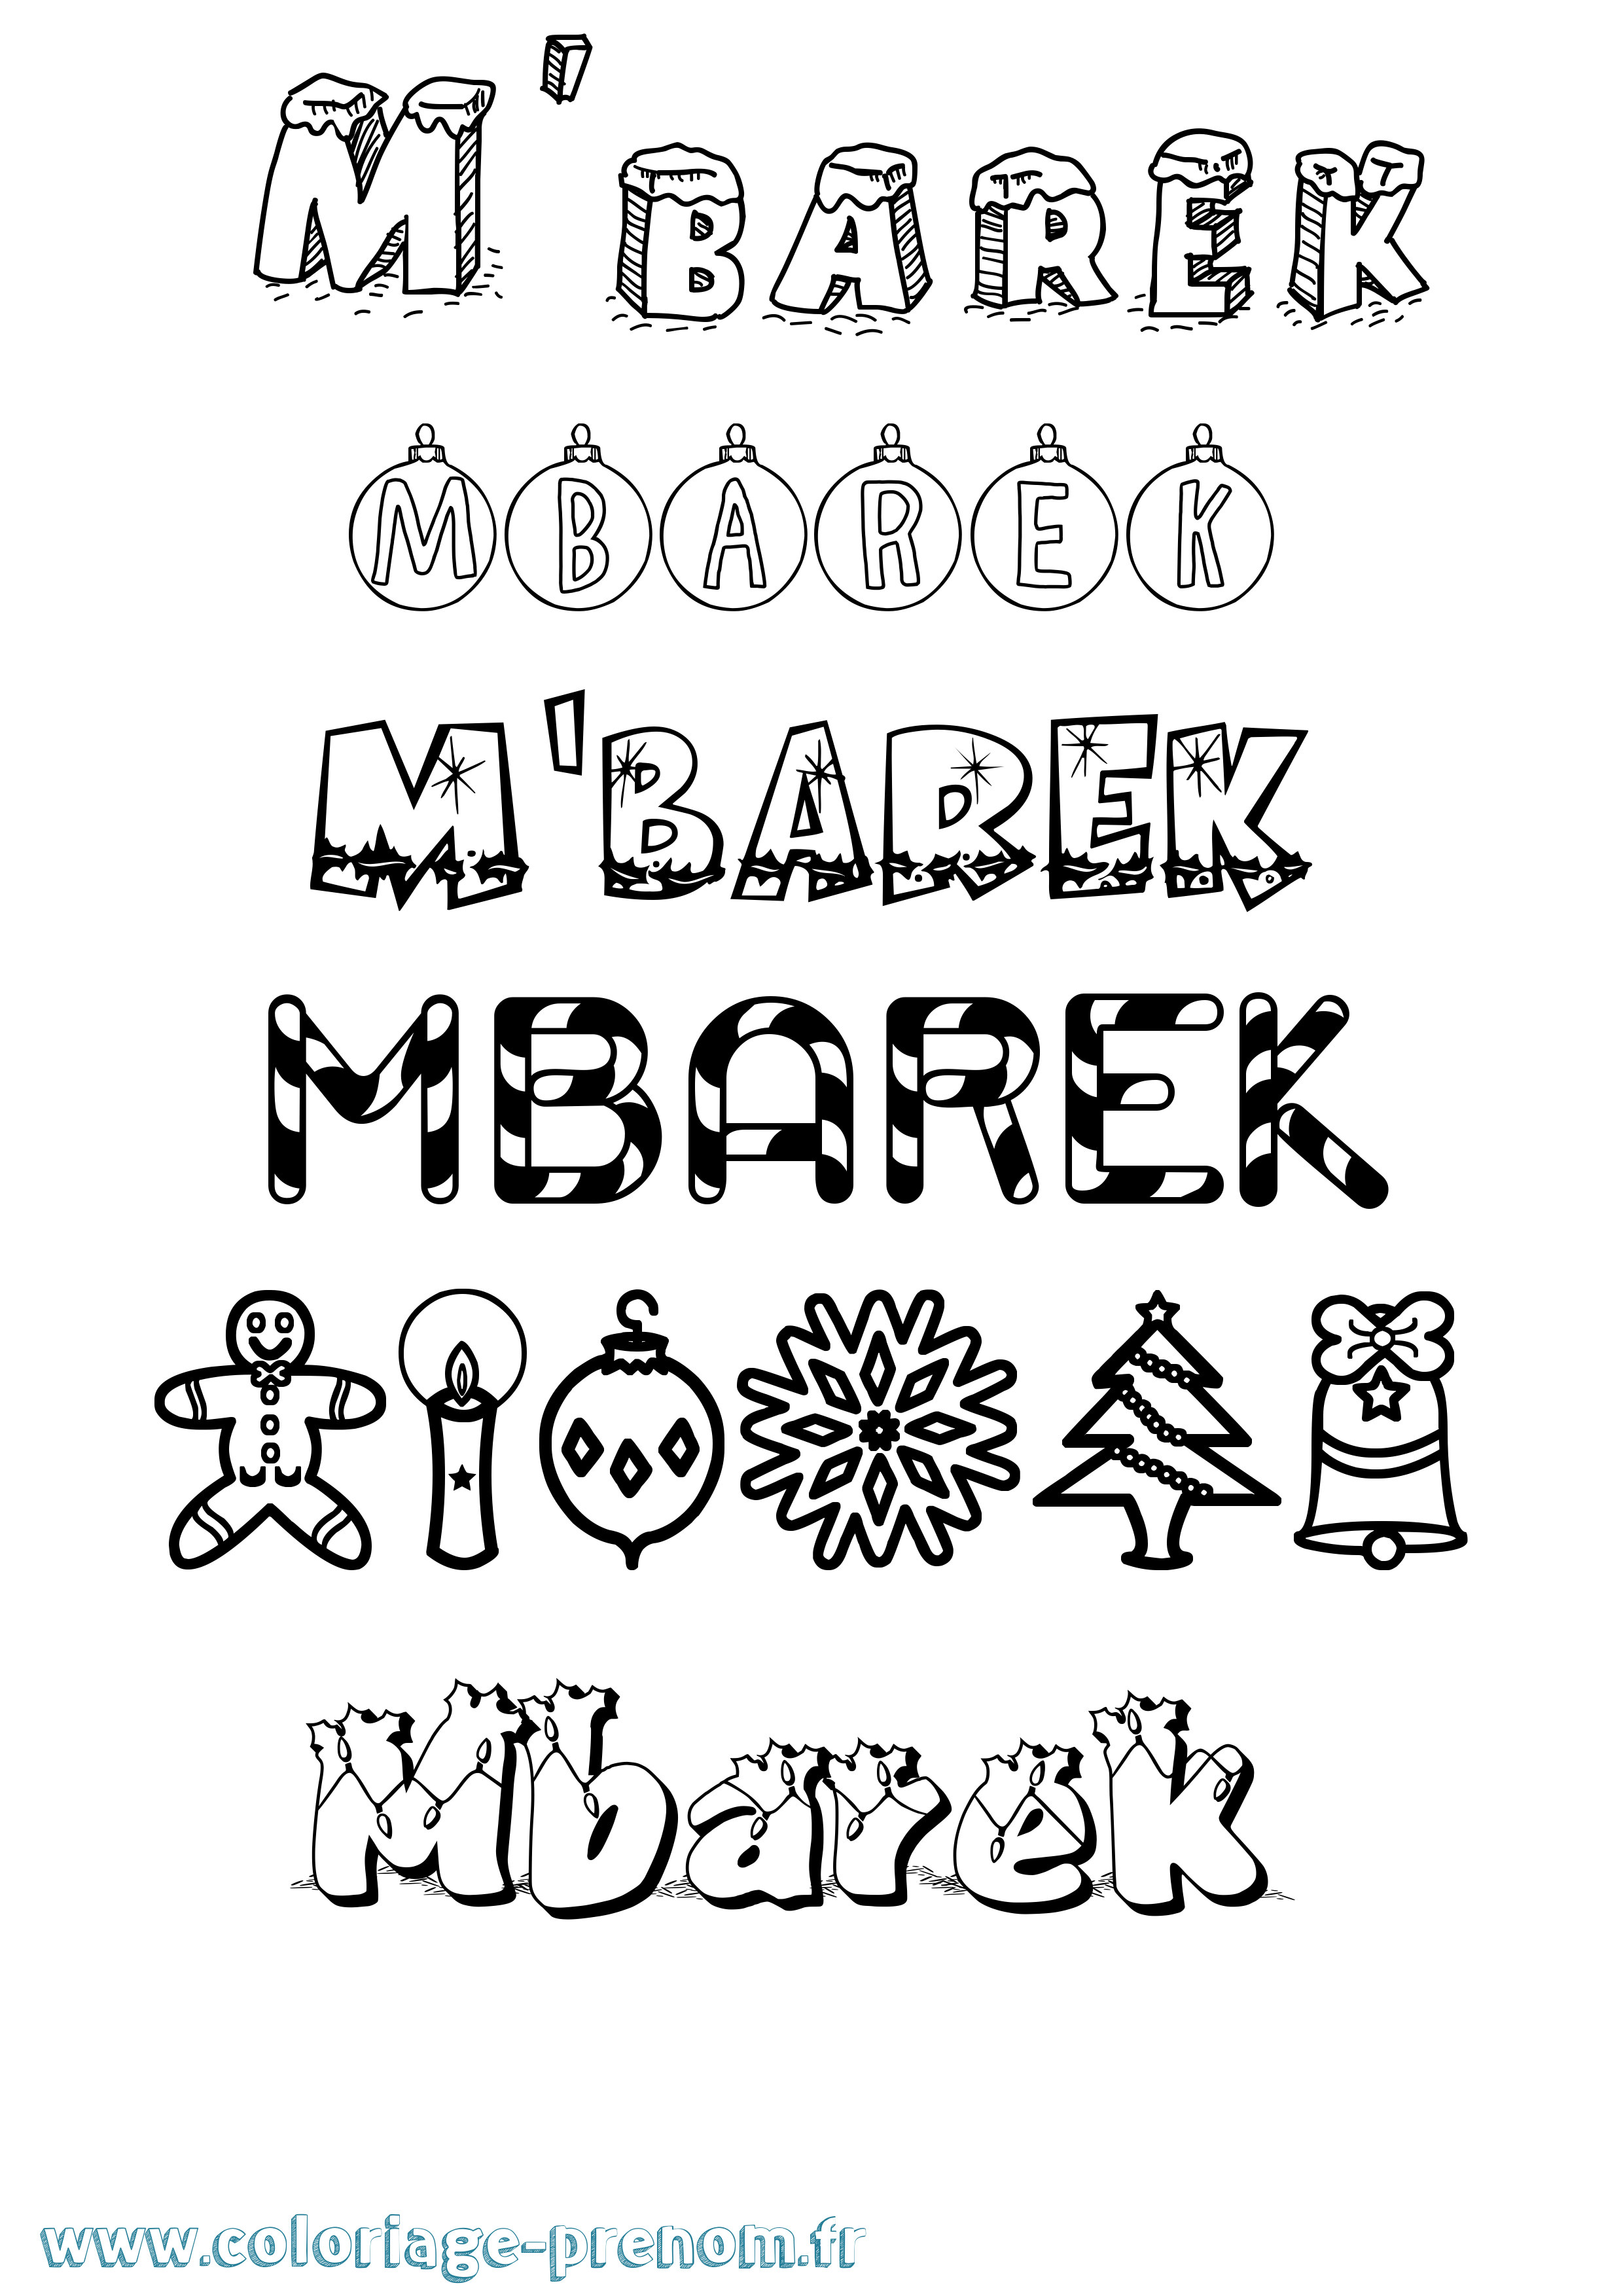 Coloriage prénom M'Barek Noël